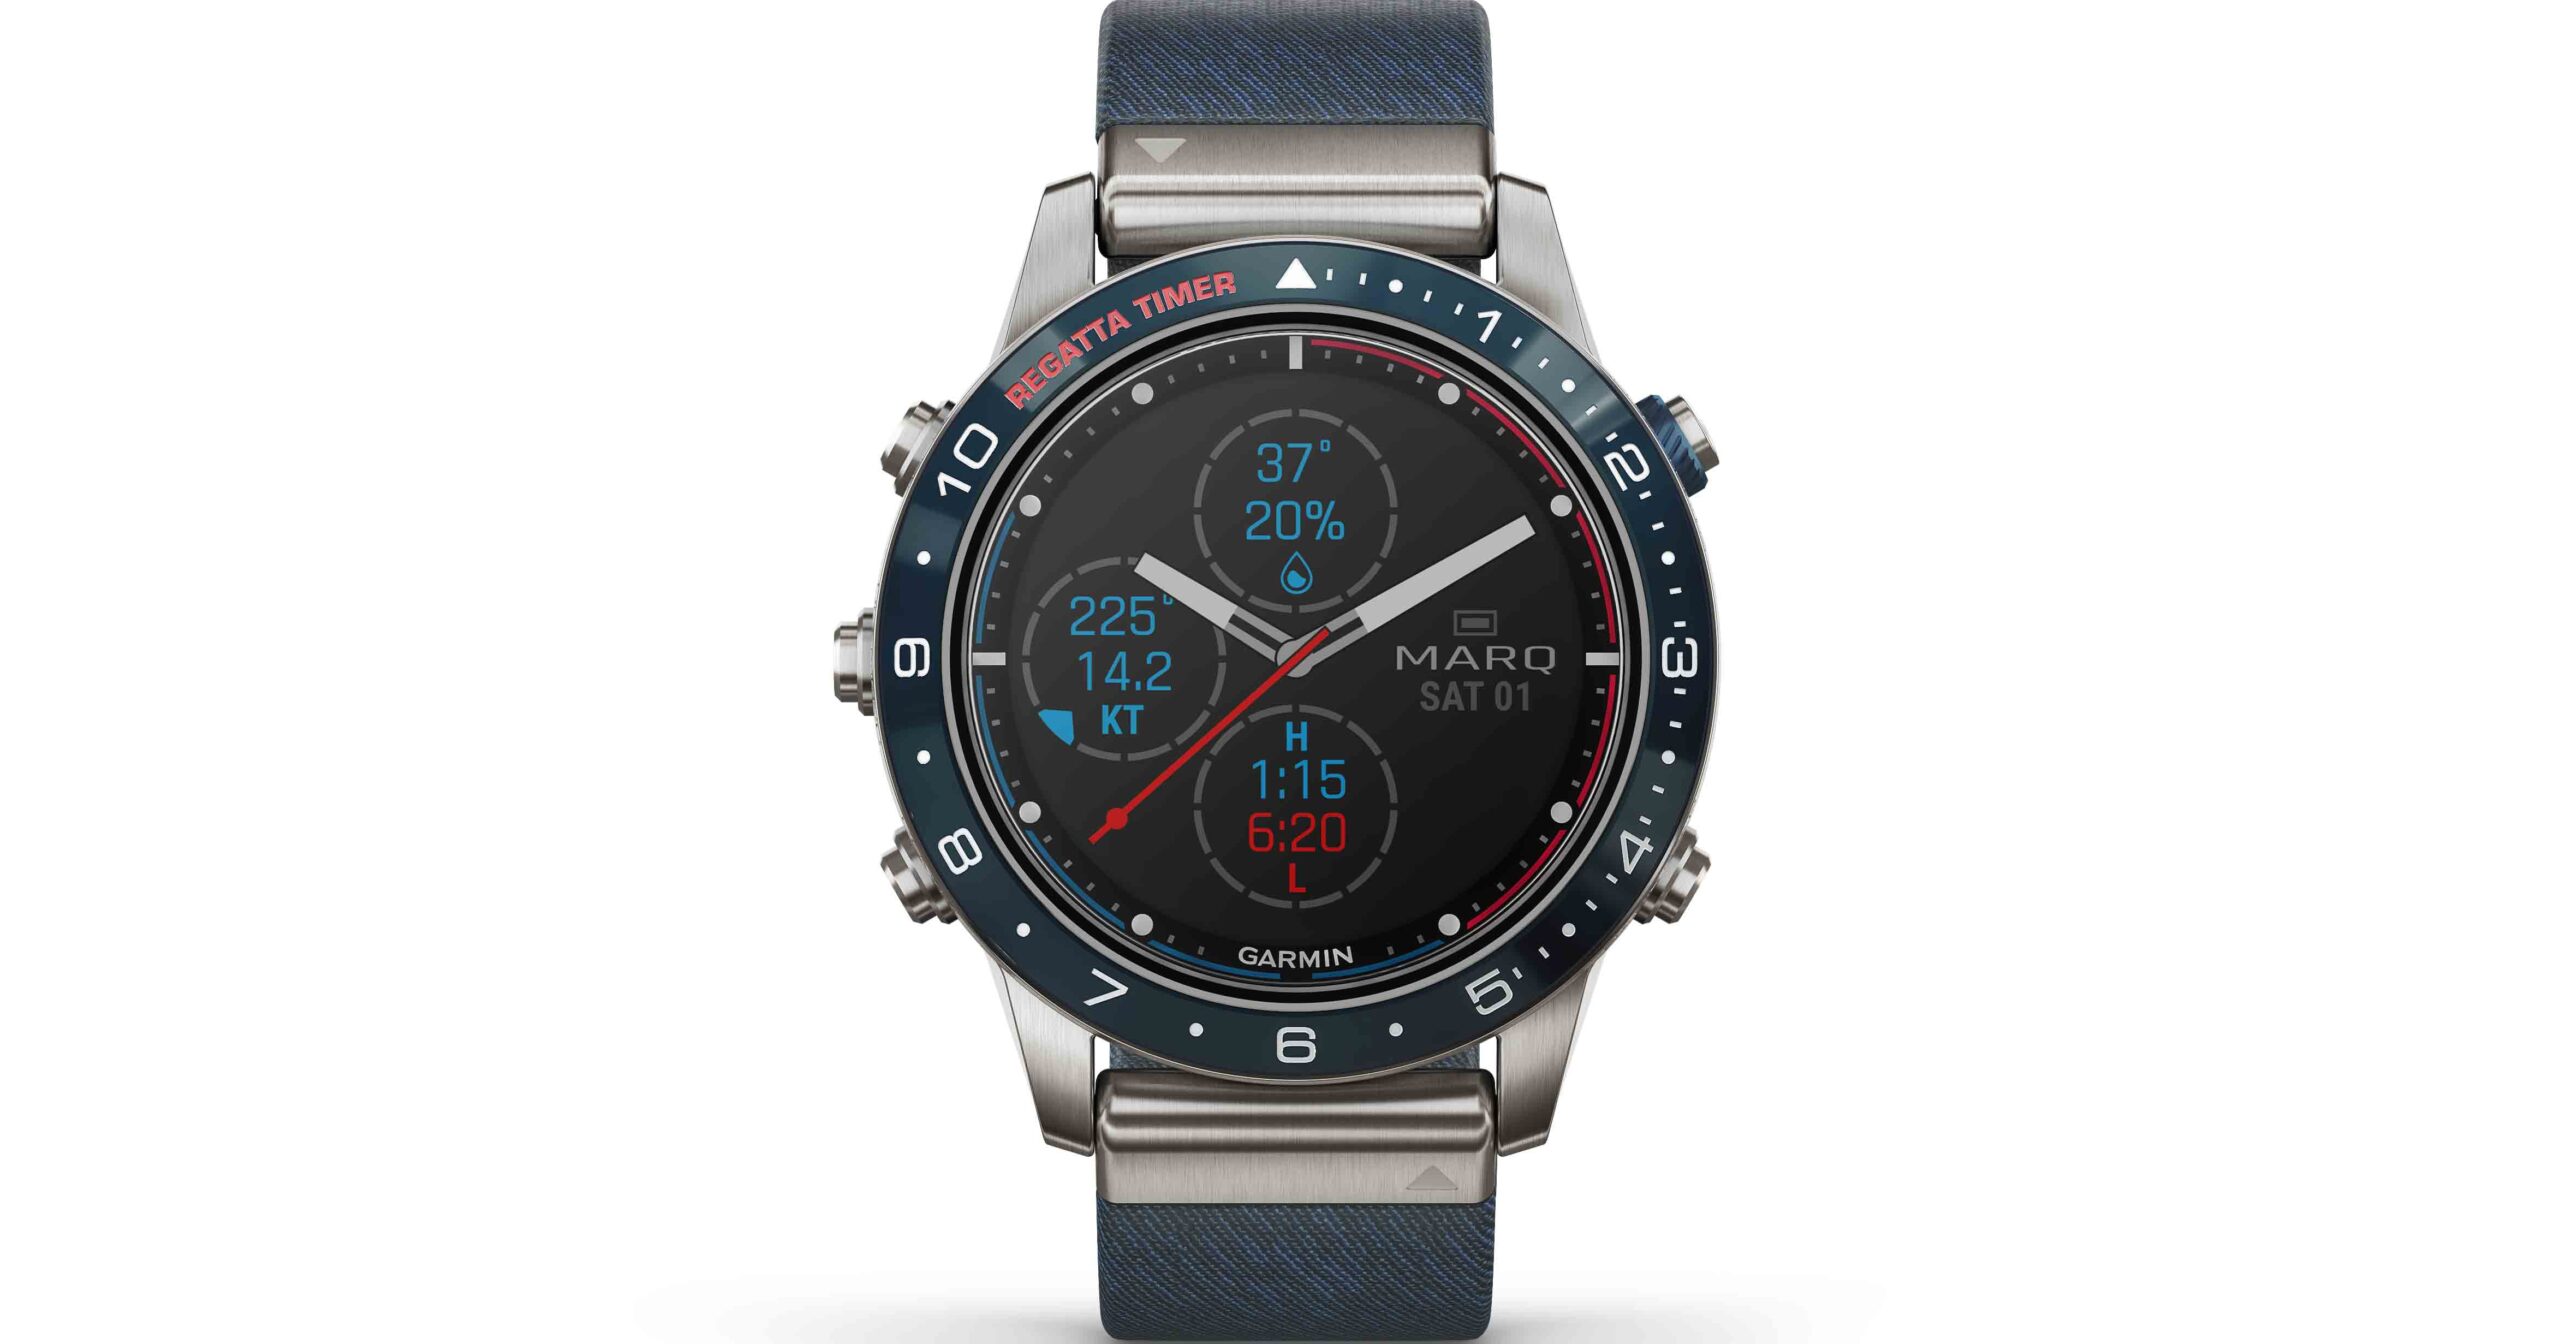 Die MARQ Captain aus gebürstetem Titan Grad 2, Keramik Lünette und französischem Jaquard-Weave Armband ist bereit für jedes See-Manöver. Nautische und smarte Funktionen, sowie vorinstallierte Outdoor-/und Seefahrtkarten machen diese Watch einzigartig.